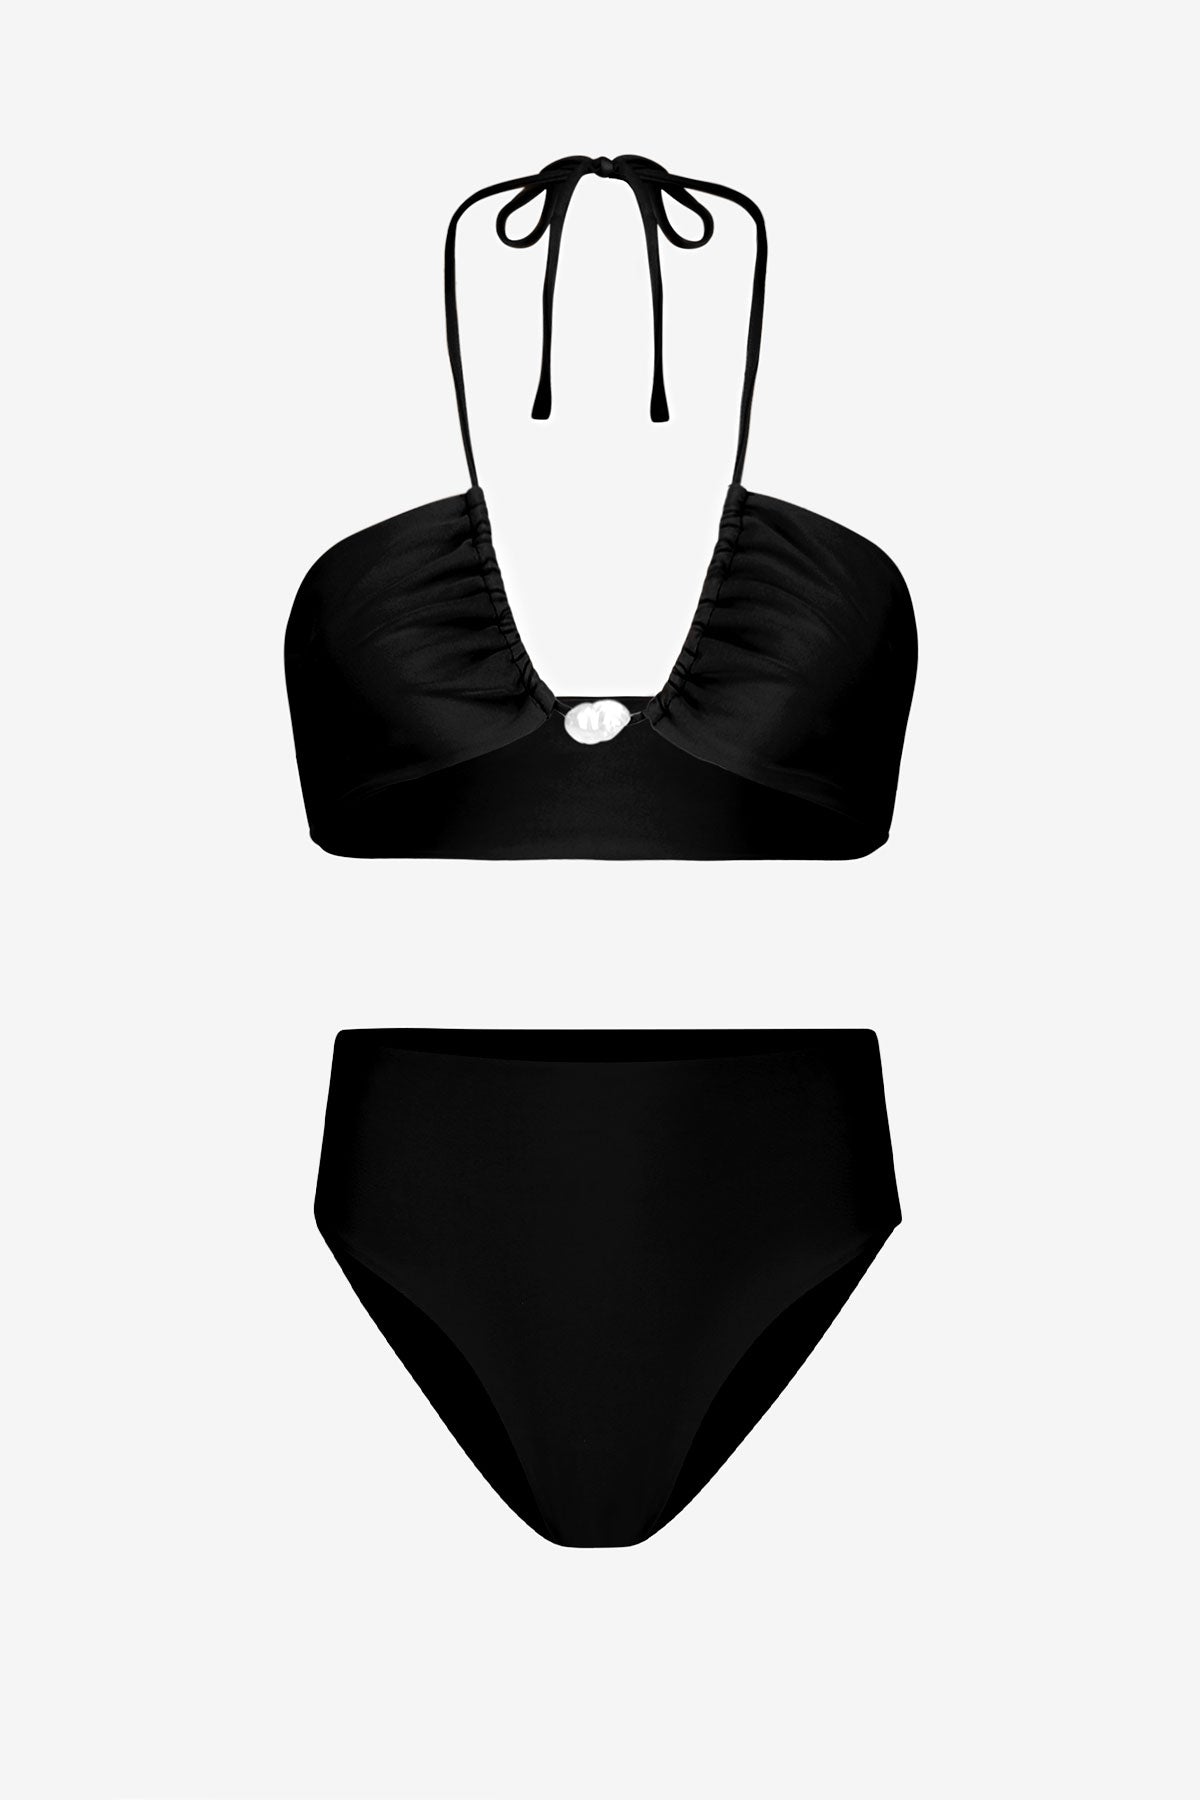 Bahia Bikini with Pearl & High-Waisted Bottom in Black